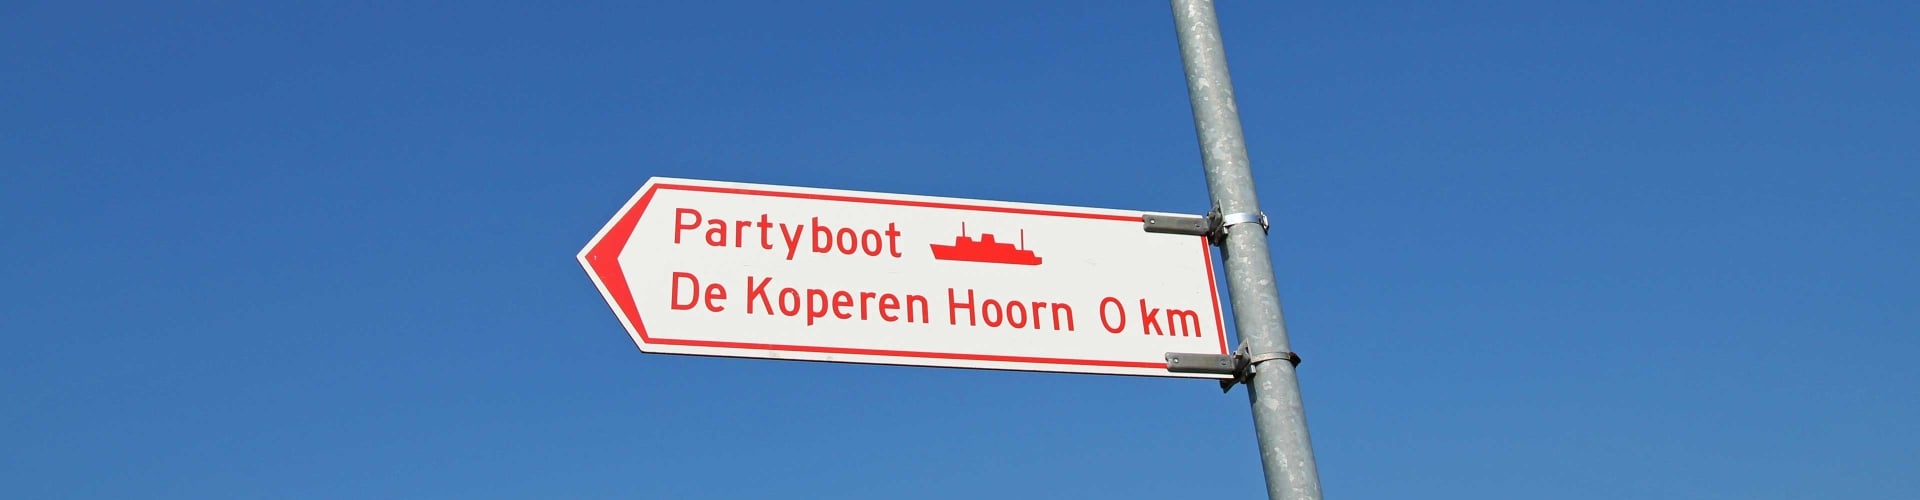 Contact met Partyboot De Koperen Hoorn